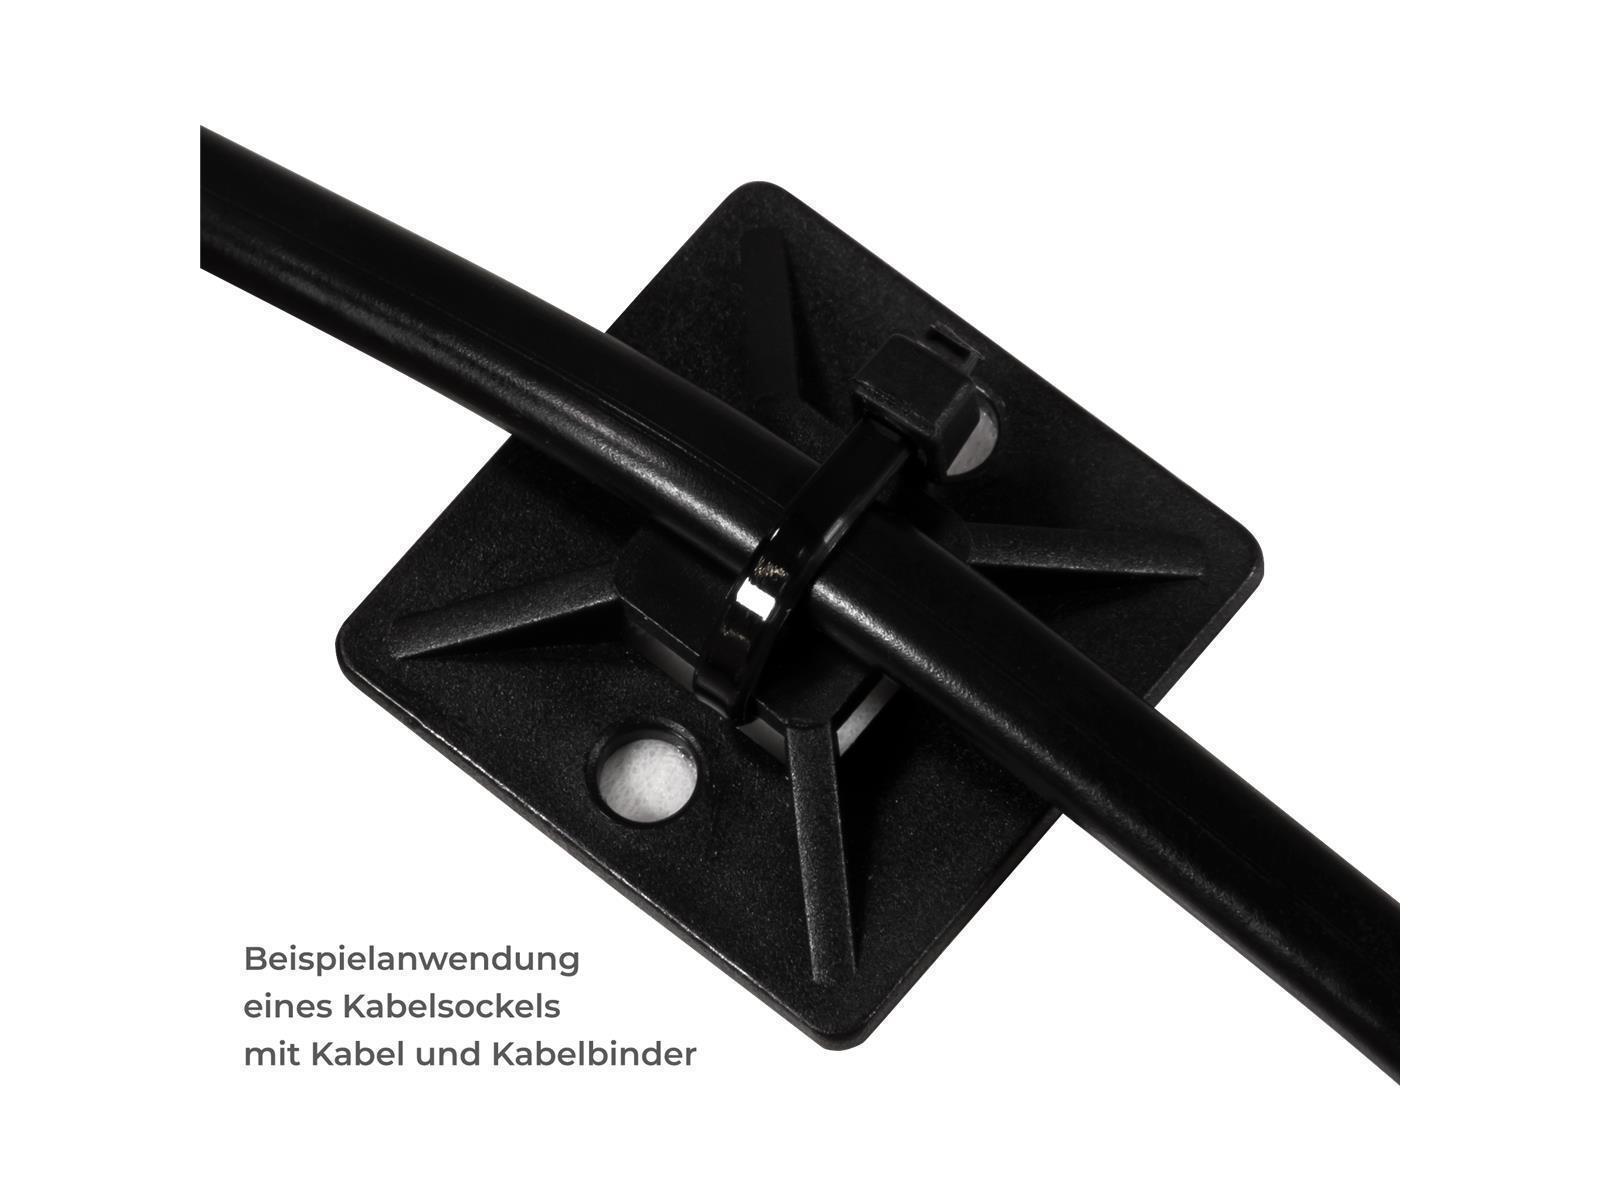 Kabelsockel McPower für Kabelbinder 25x25mm, schwarz, selbstklebend, 10er-Pack